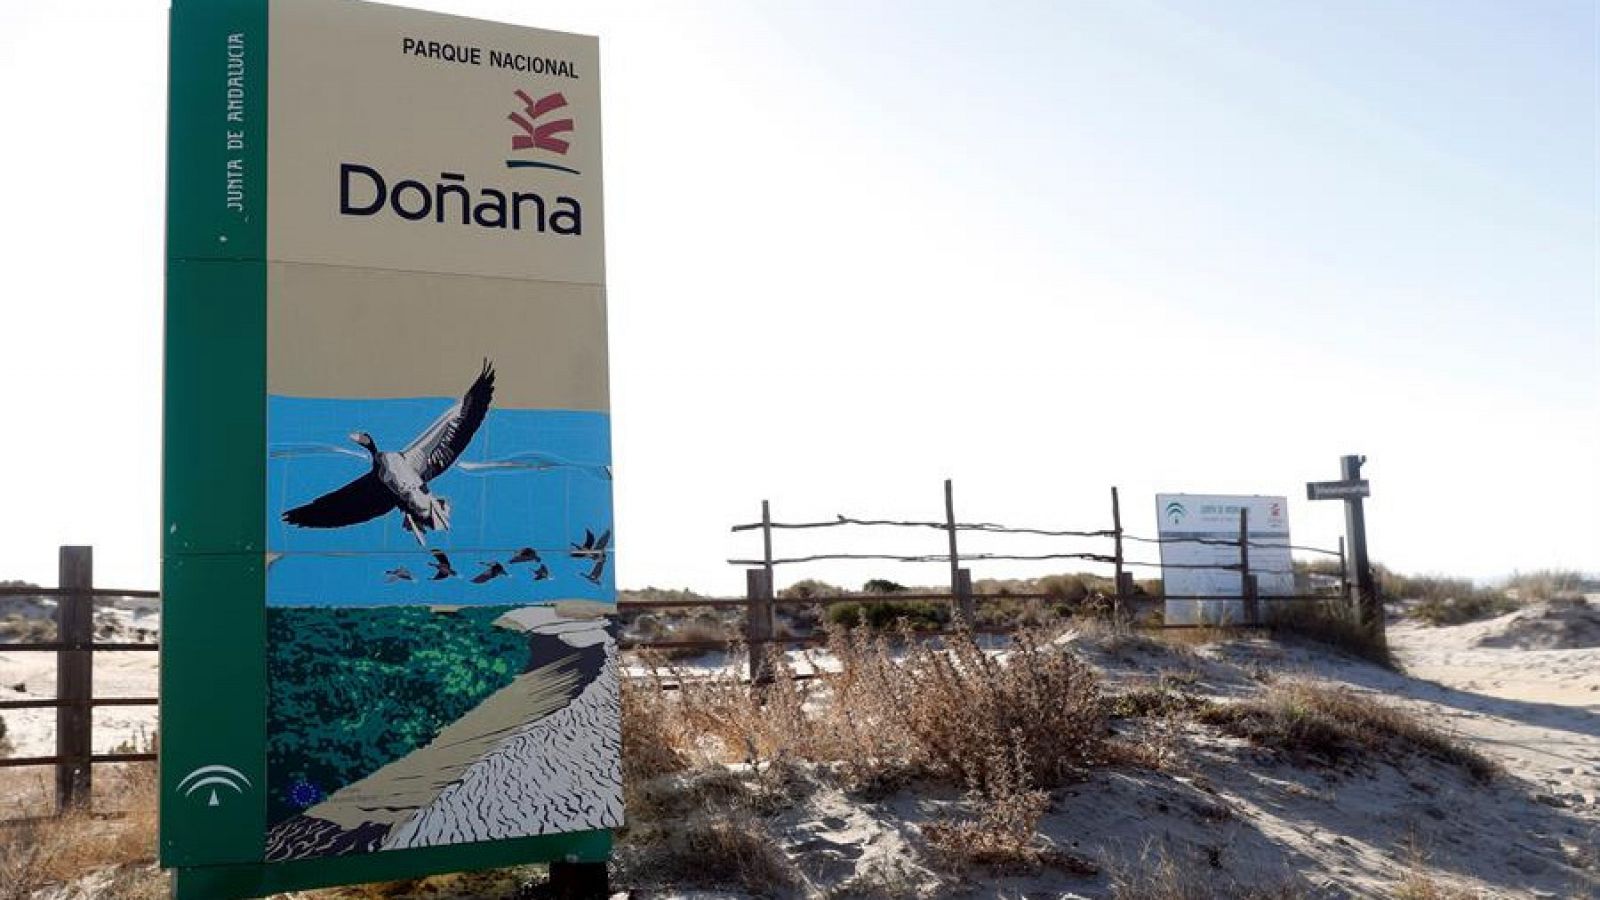 Las extracciones de agua en Doñana incumplen la normativa europea